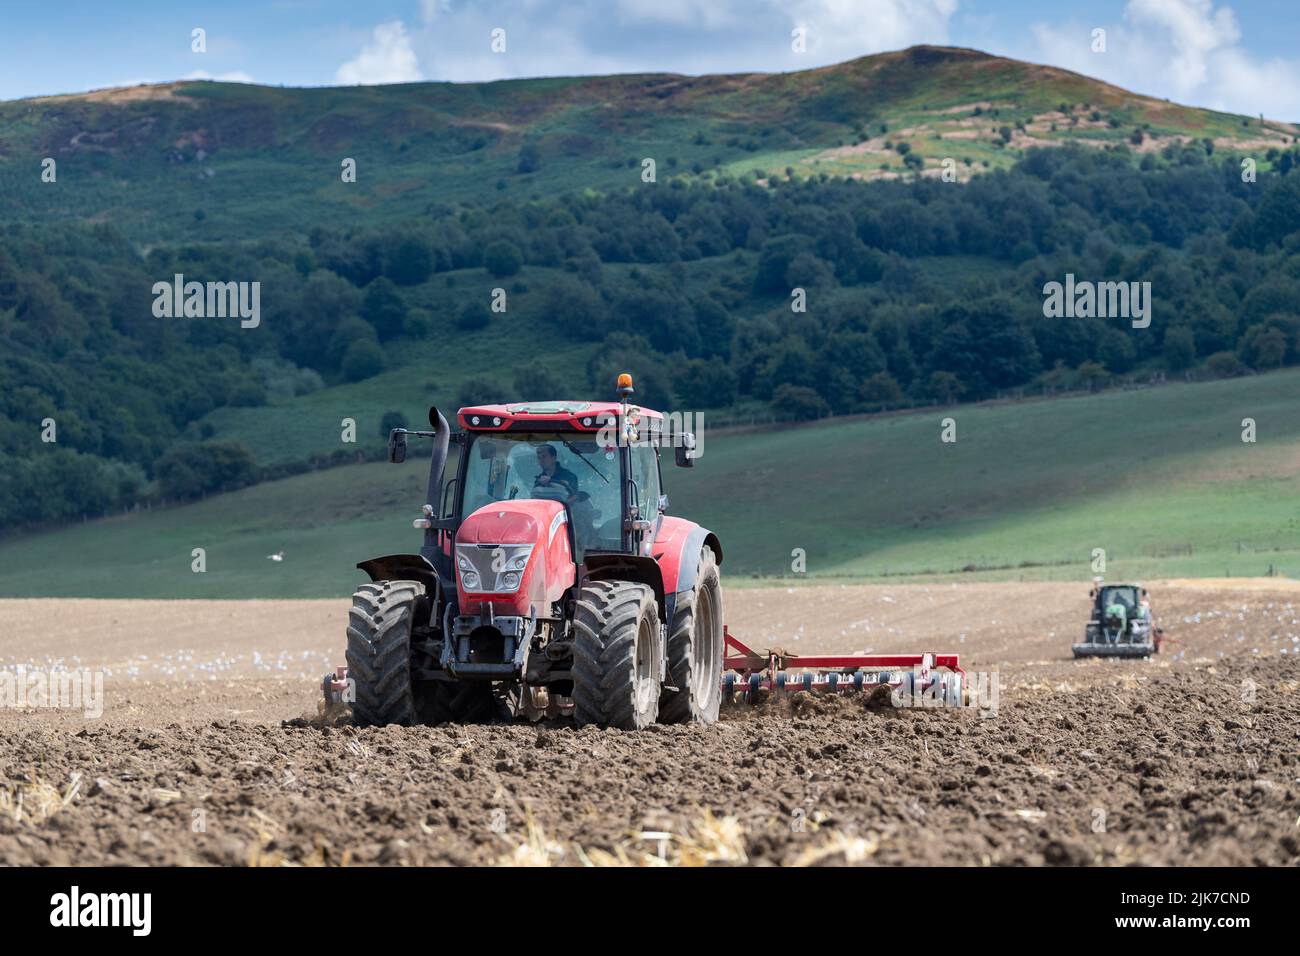 Landwirt mit einem McCormick Traktor, der das Saatbett vorbereitet, während ein Traktor mit Sämaschine folgt. North Yorkshire, Großbritannien. Stockfoto